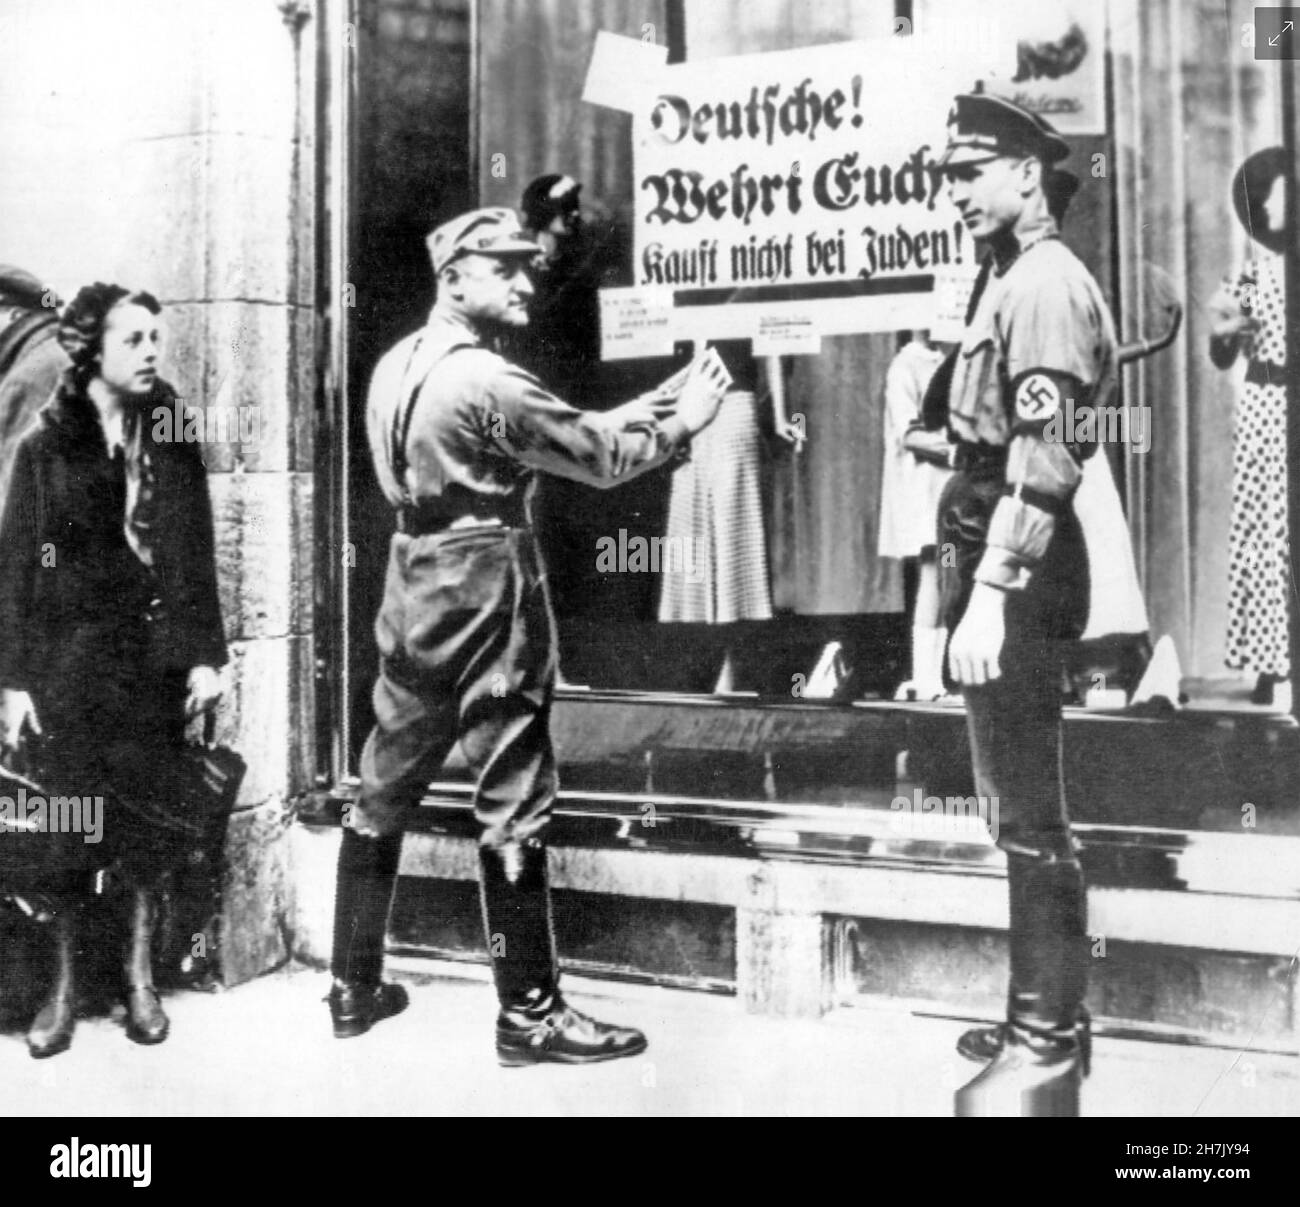 KRISTALLNACHT (Crystal Night) un soldato delle SS che ha pubblicato un avviso sulla finestra di un negozio sulla Friedrichstrasse, Berlino nel novembre 1938, dicendo ai tedeschi di non acquistare beni ebraici. L'uomo a destra sembra avere un piede di club. Foto Stock